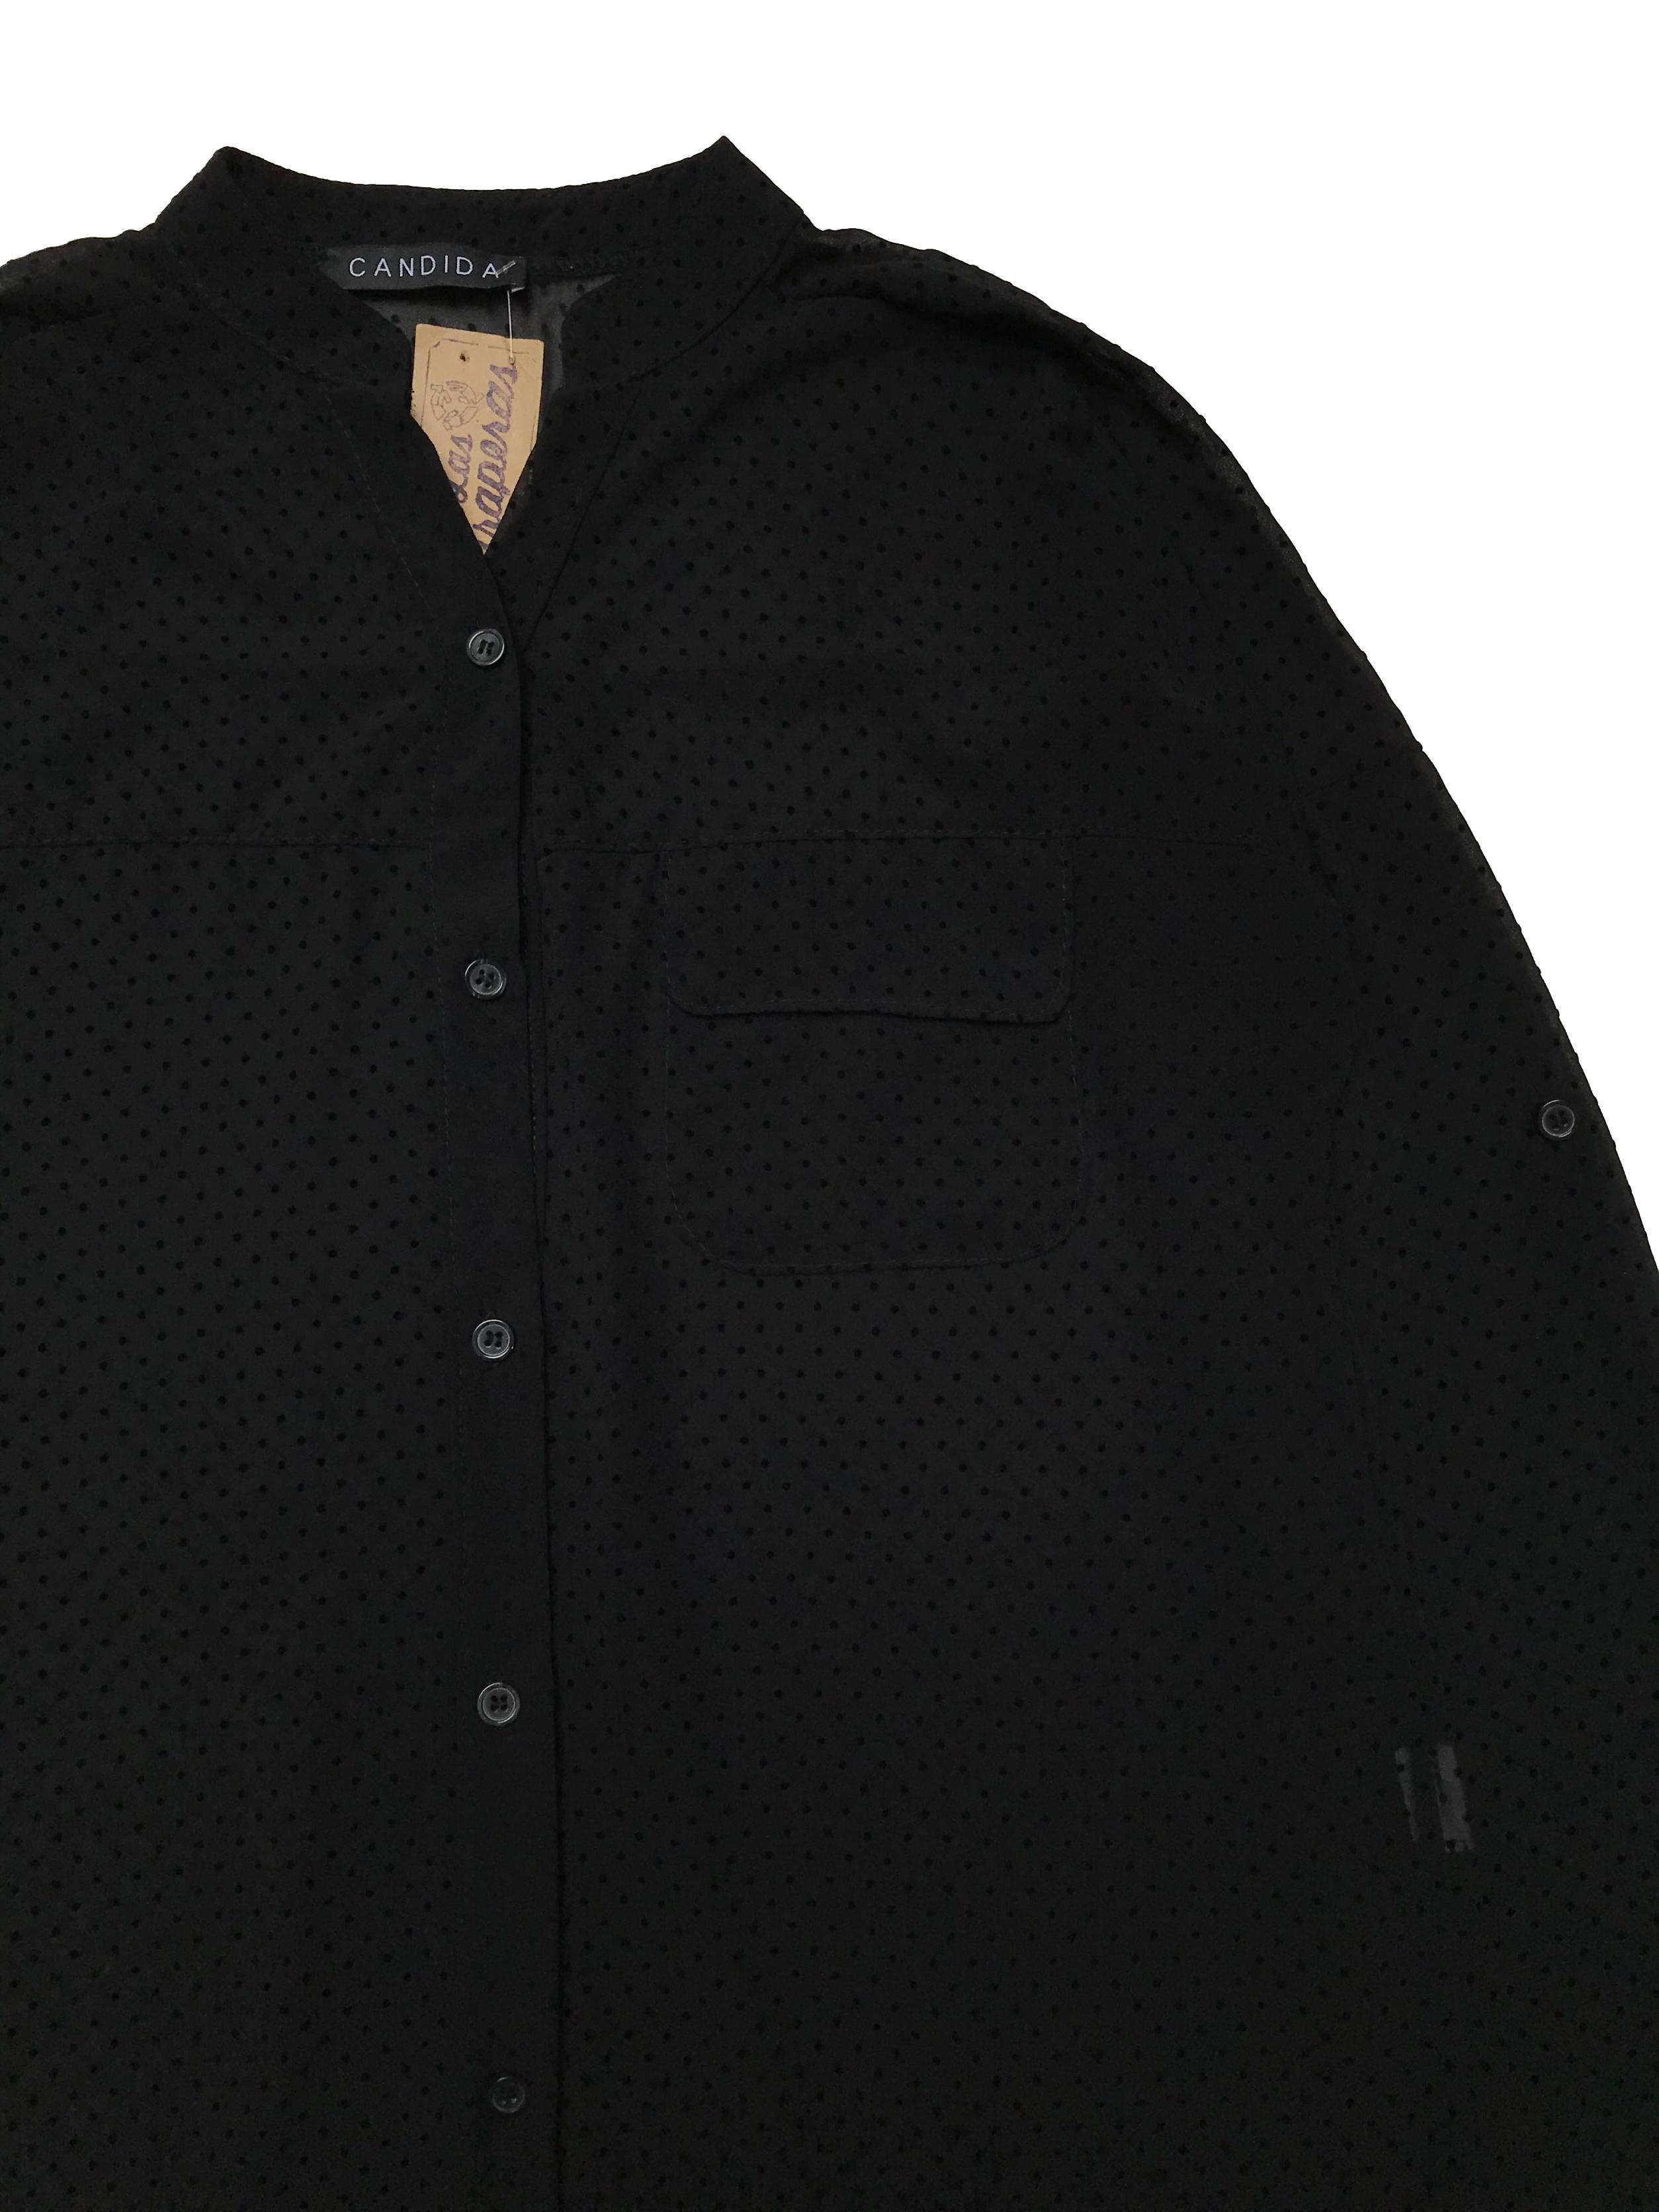 Blusa negra de gasa con textura de puntos en plush, canesú en la espalda, modelo suelto. , manga regulable con botón. Largo 60cm. Ancho 110 cm.  